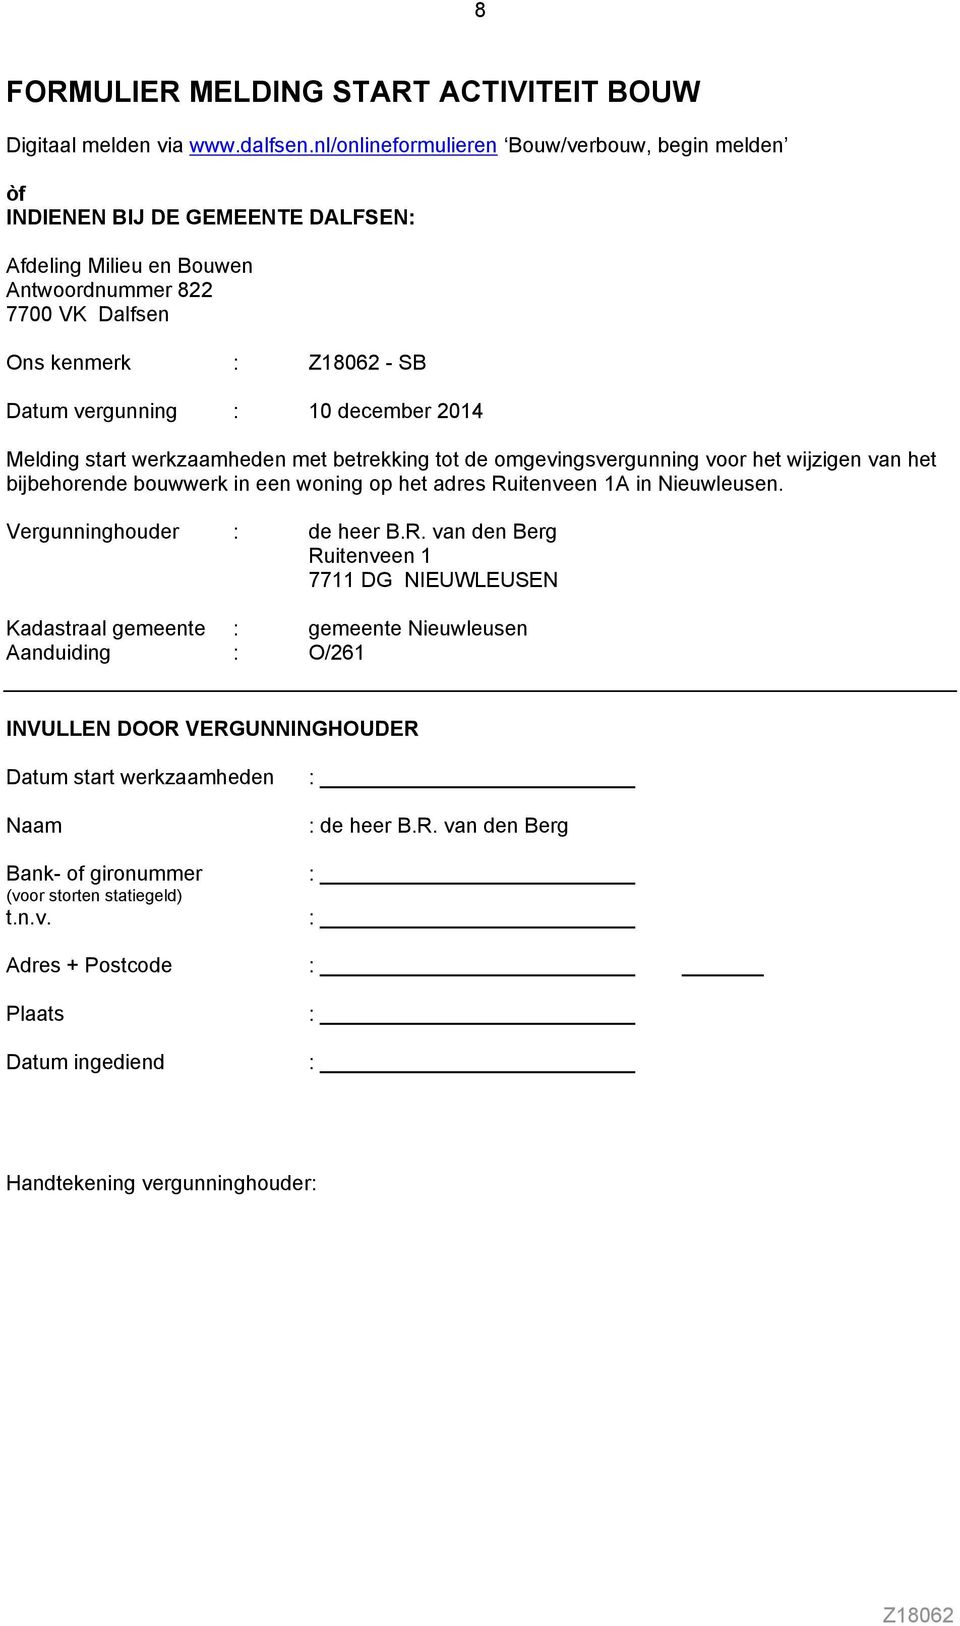 2014 Melding start werkzaamheden met betrekking tot de omgevingsvergunning voor het wijzigen van het bijbehorende bouwwerk in een woning op het adres Ruitenveen 1A in Nieuwleusen.